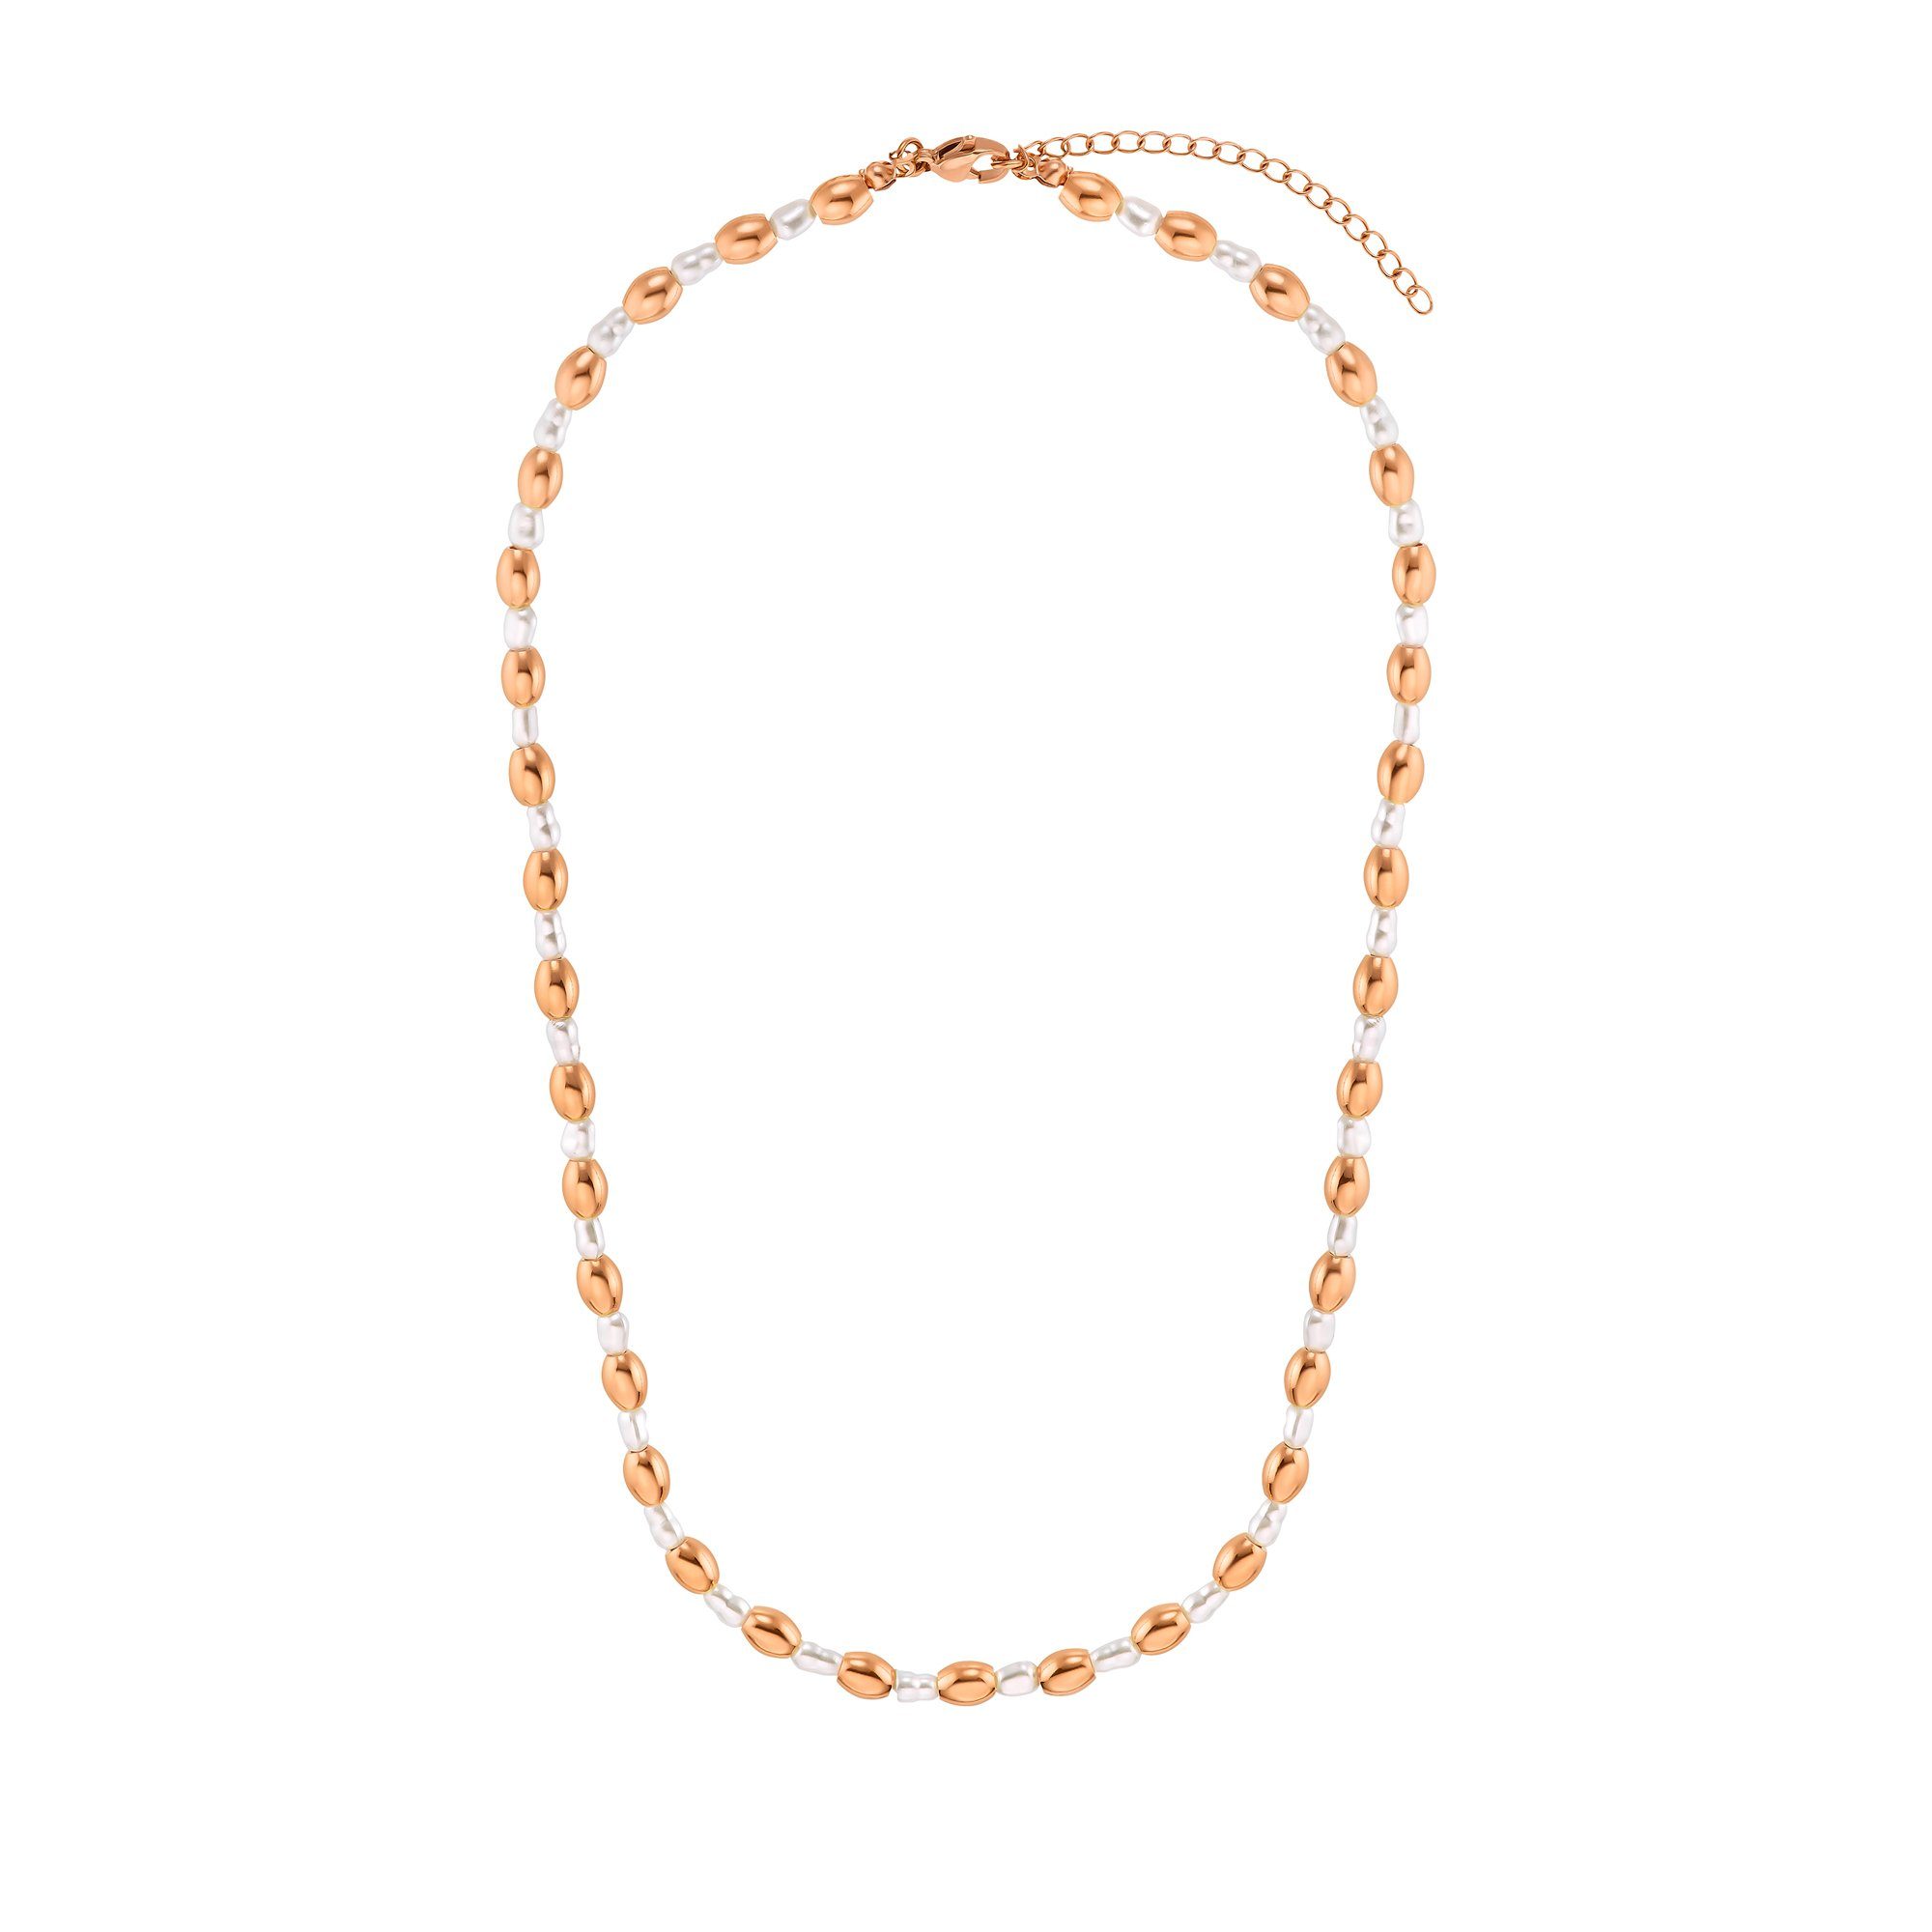 Heideman Collier Maya silberfarben poliert (inkl. Geschenkverpackung), Halskette mit ausgefallenen Perlen rosegoldfarben